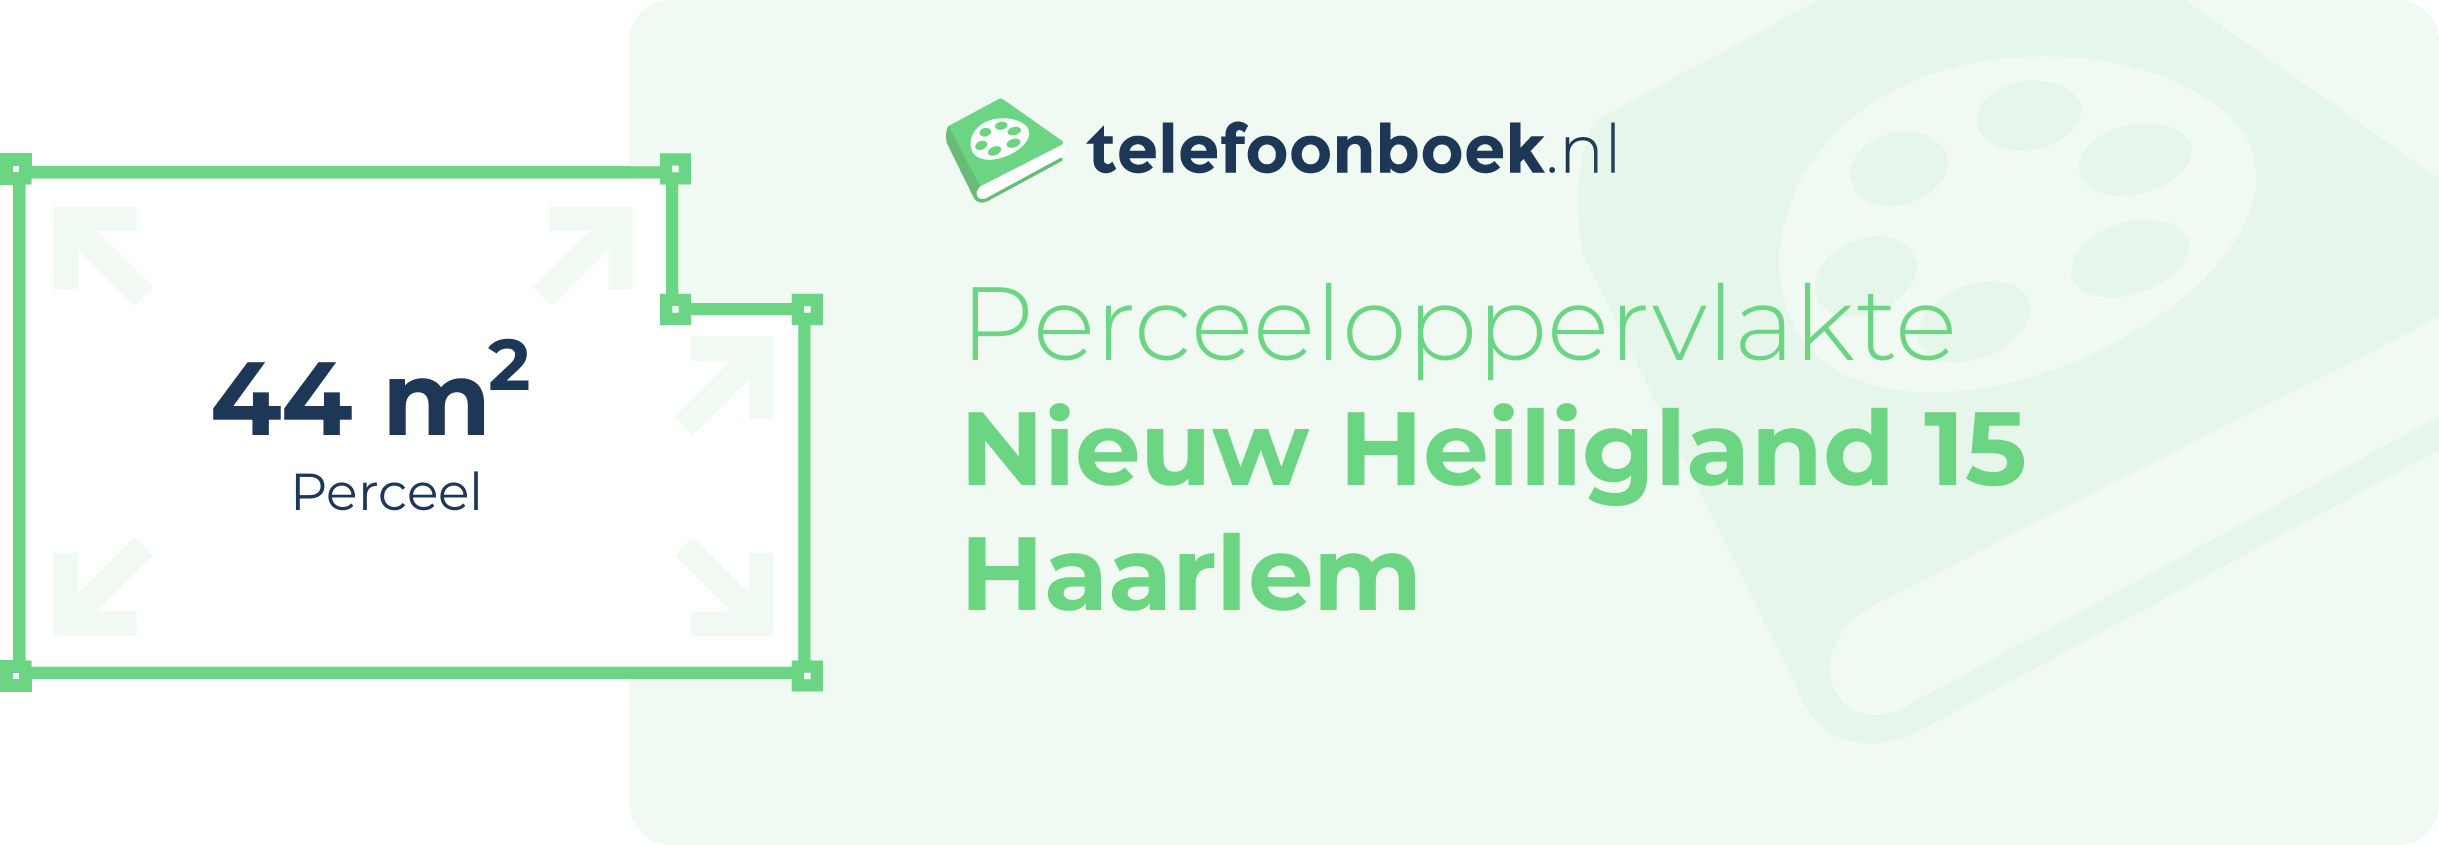 Perceeloppervlakte Nieuw Heiligland 15 Haarlem